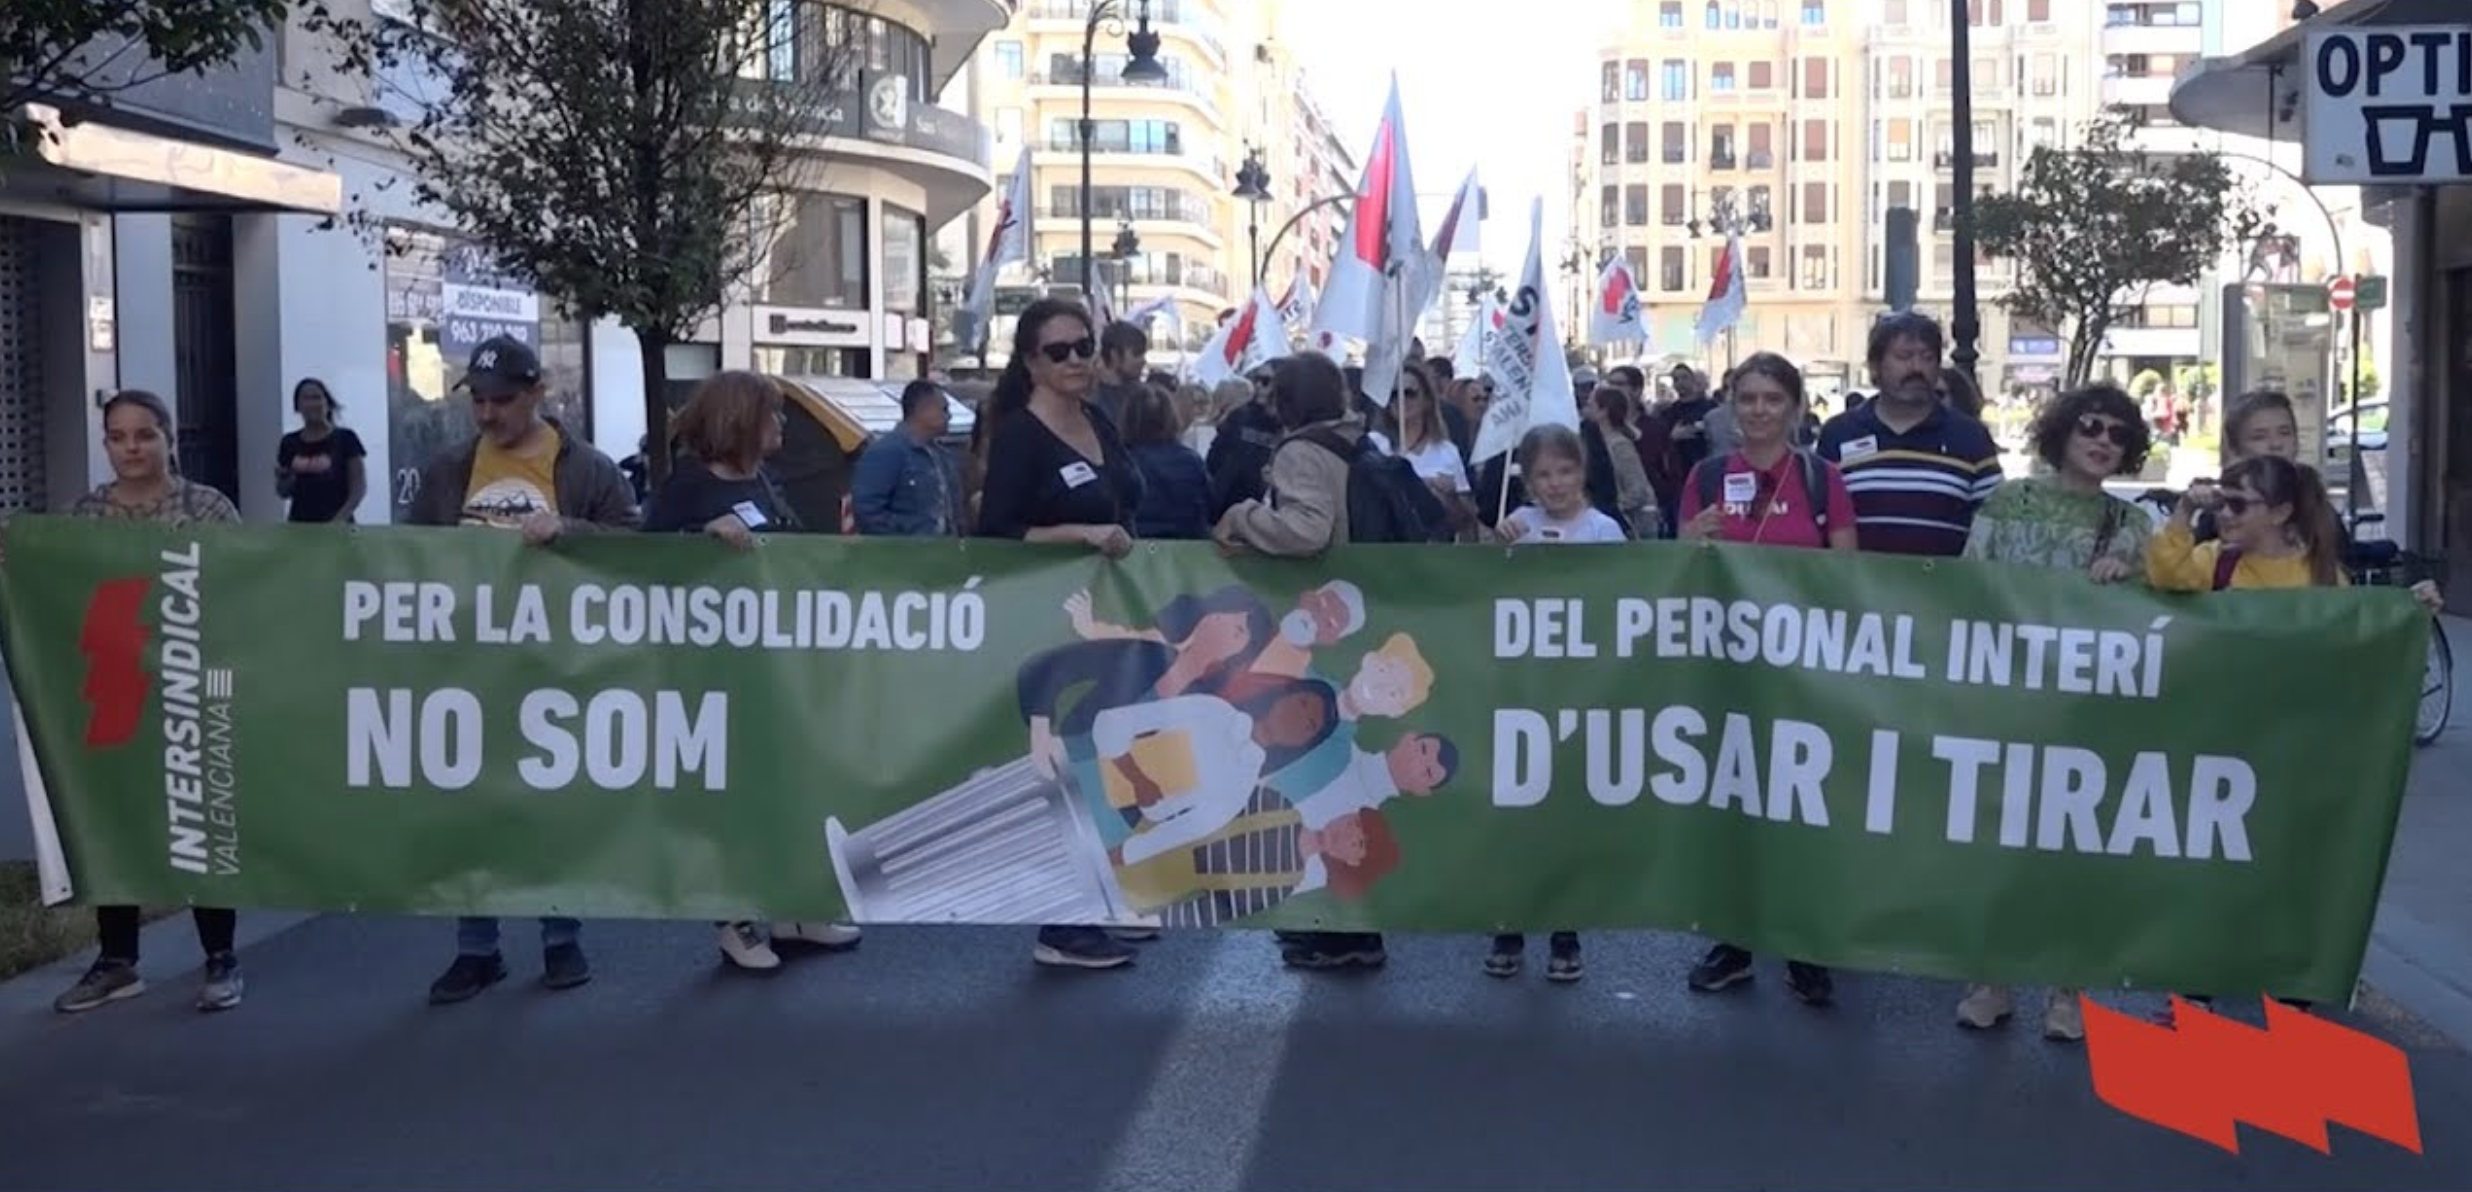 Milers de persones es manifesten a València contra la llei Iceta i la consolidació del professorat interí